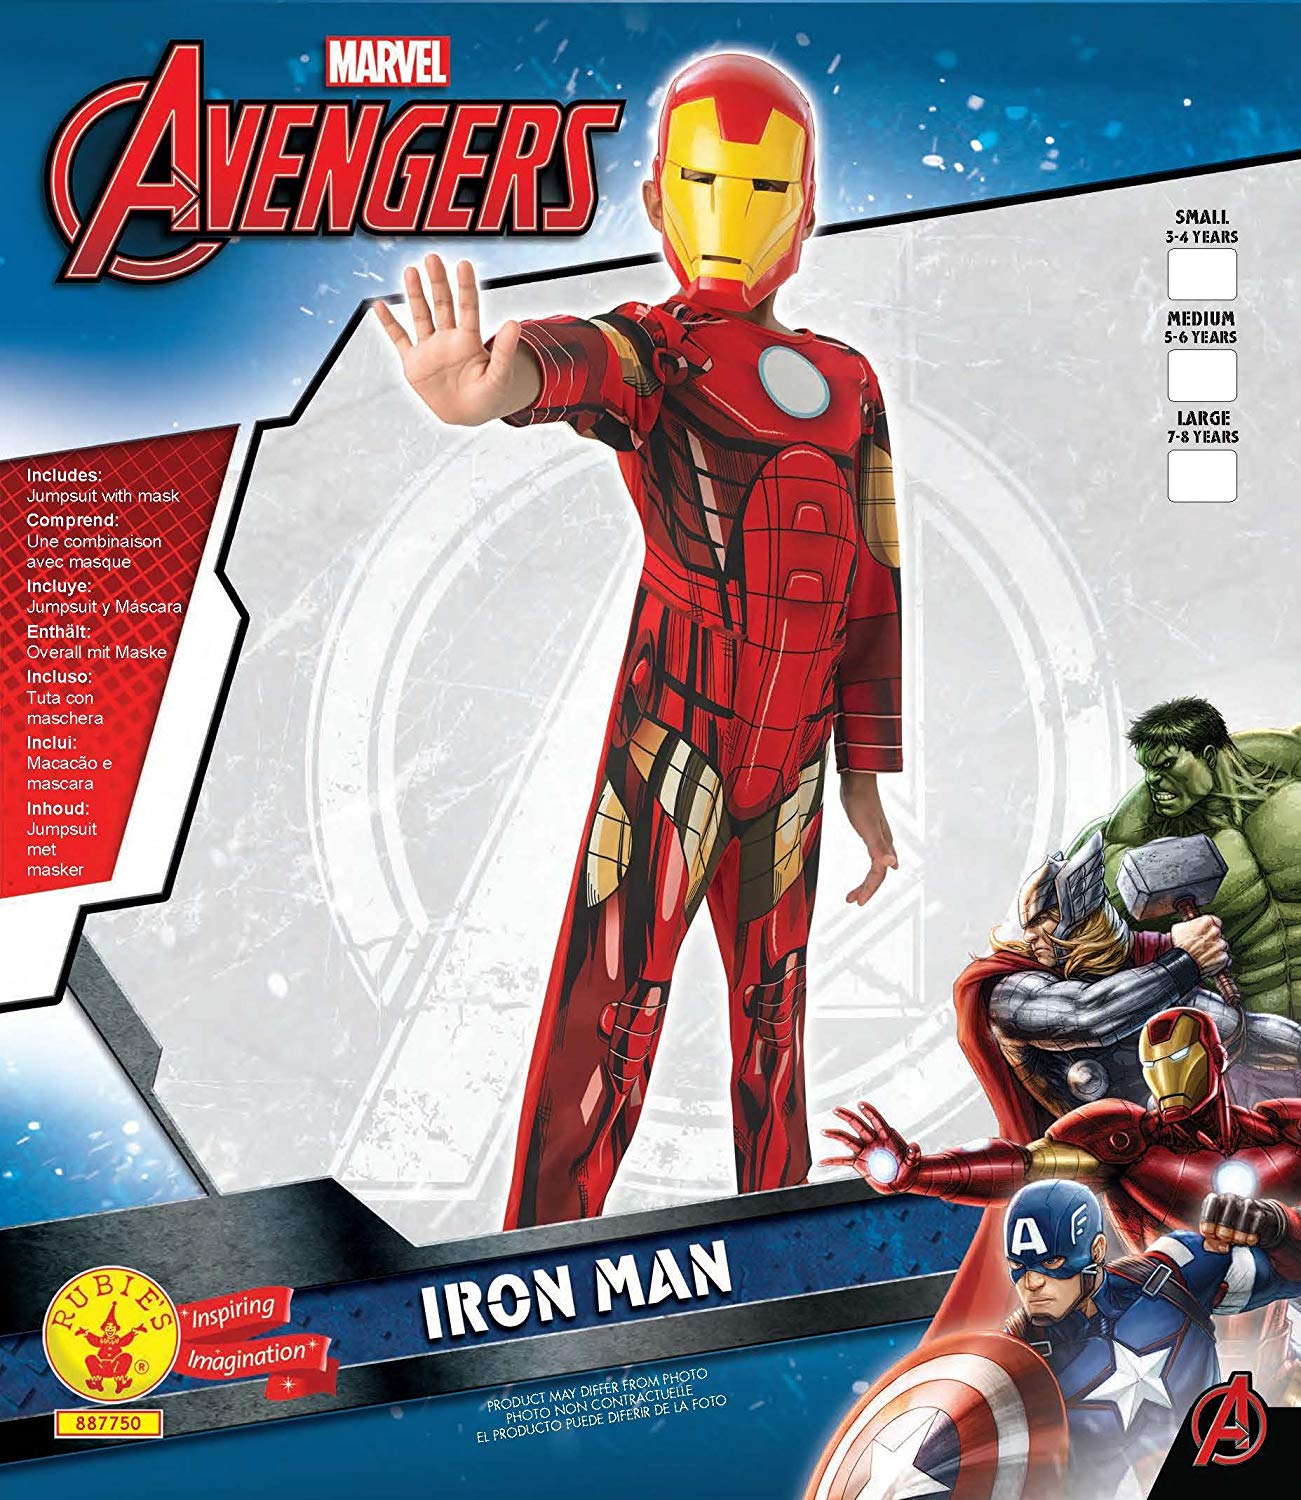 Iron Man Medium 5-6 Years Costume